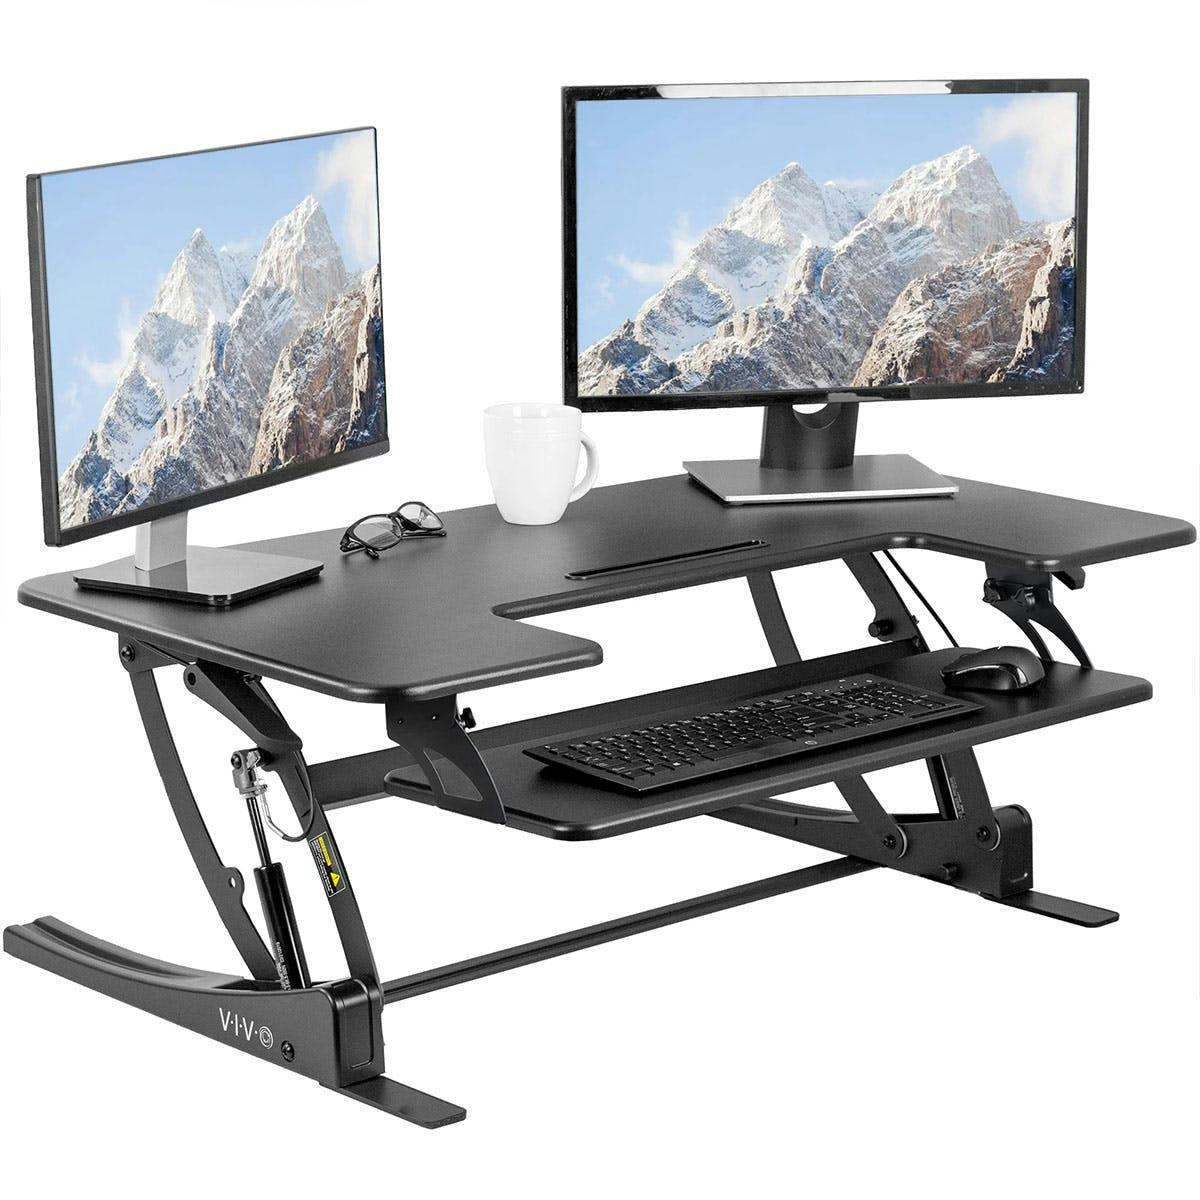 Desk raiser for the proper sitting posture